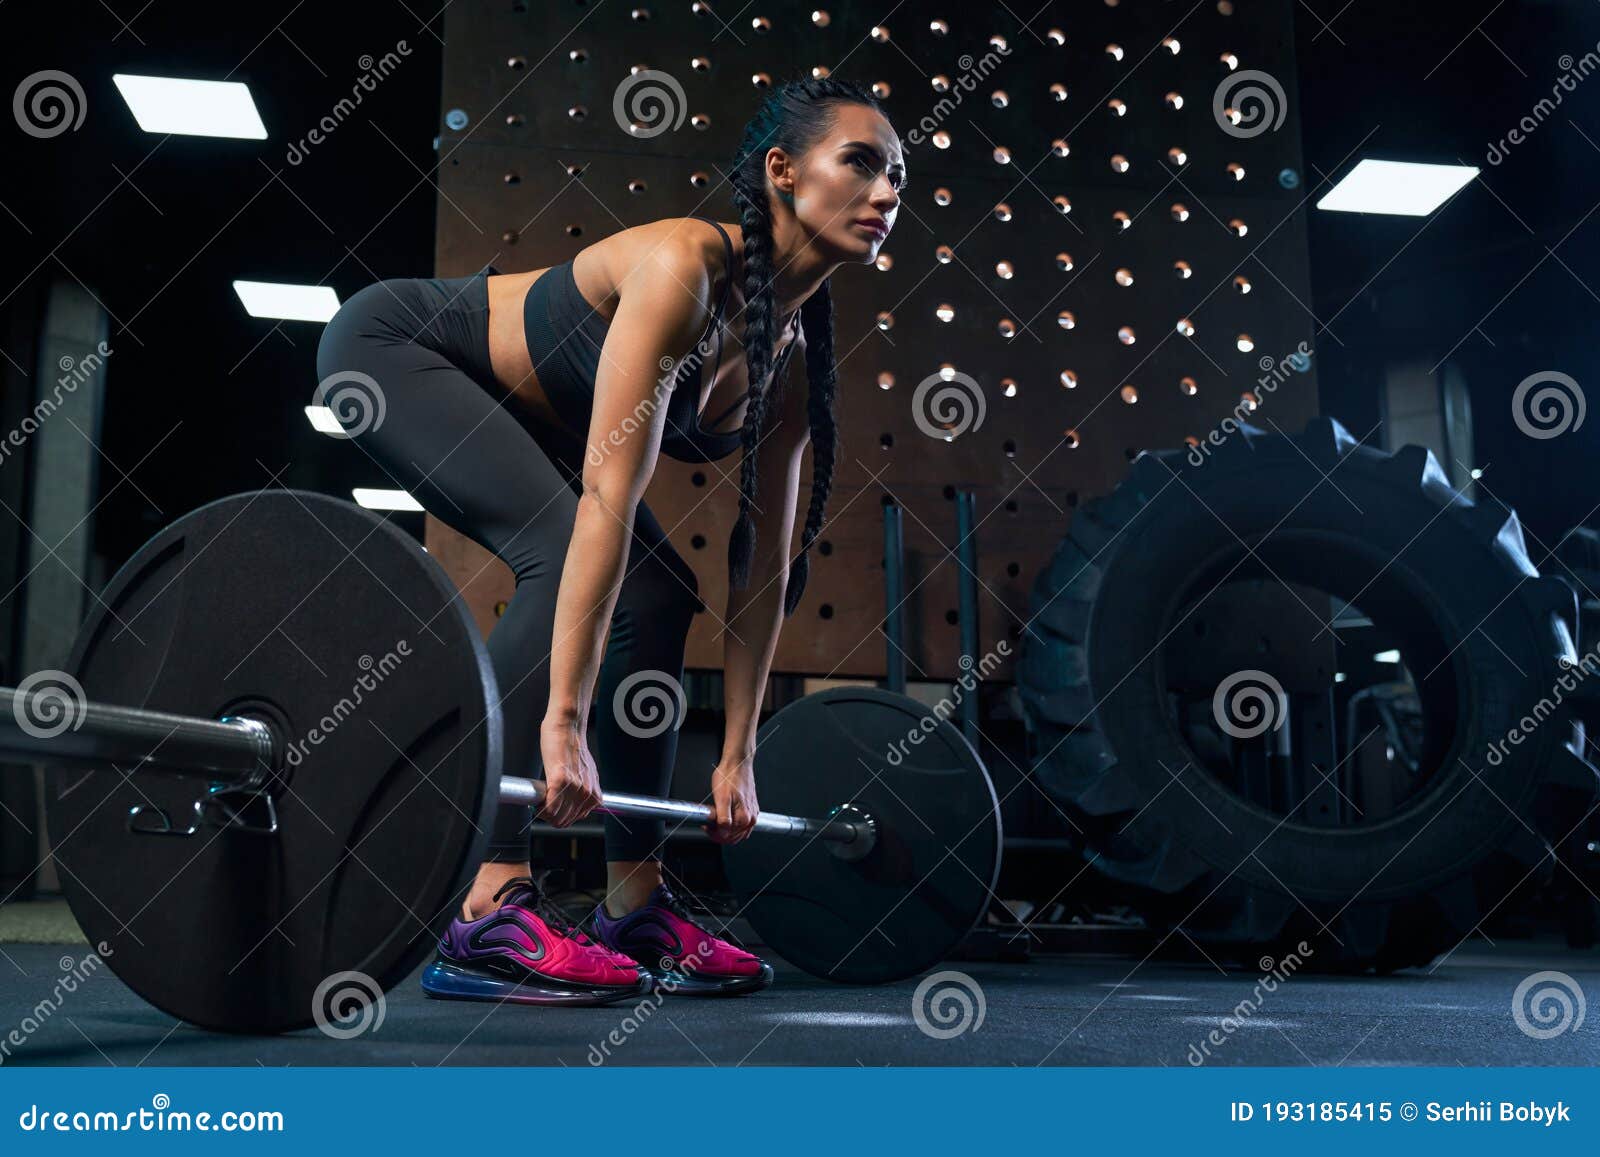 Female Bodubuilder Doing Deadlift Using Barbell in Gym. Stock Image ...